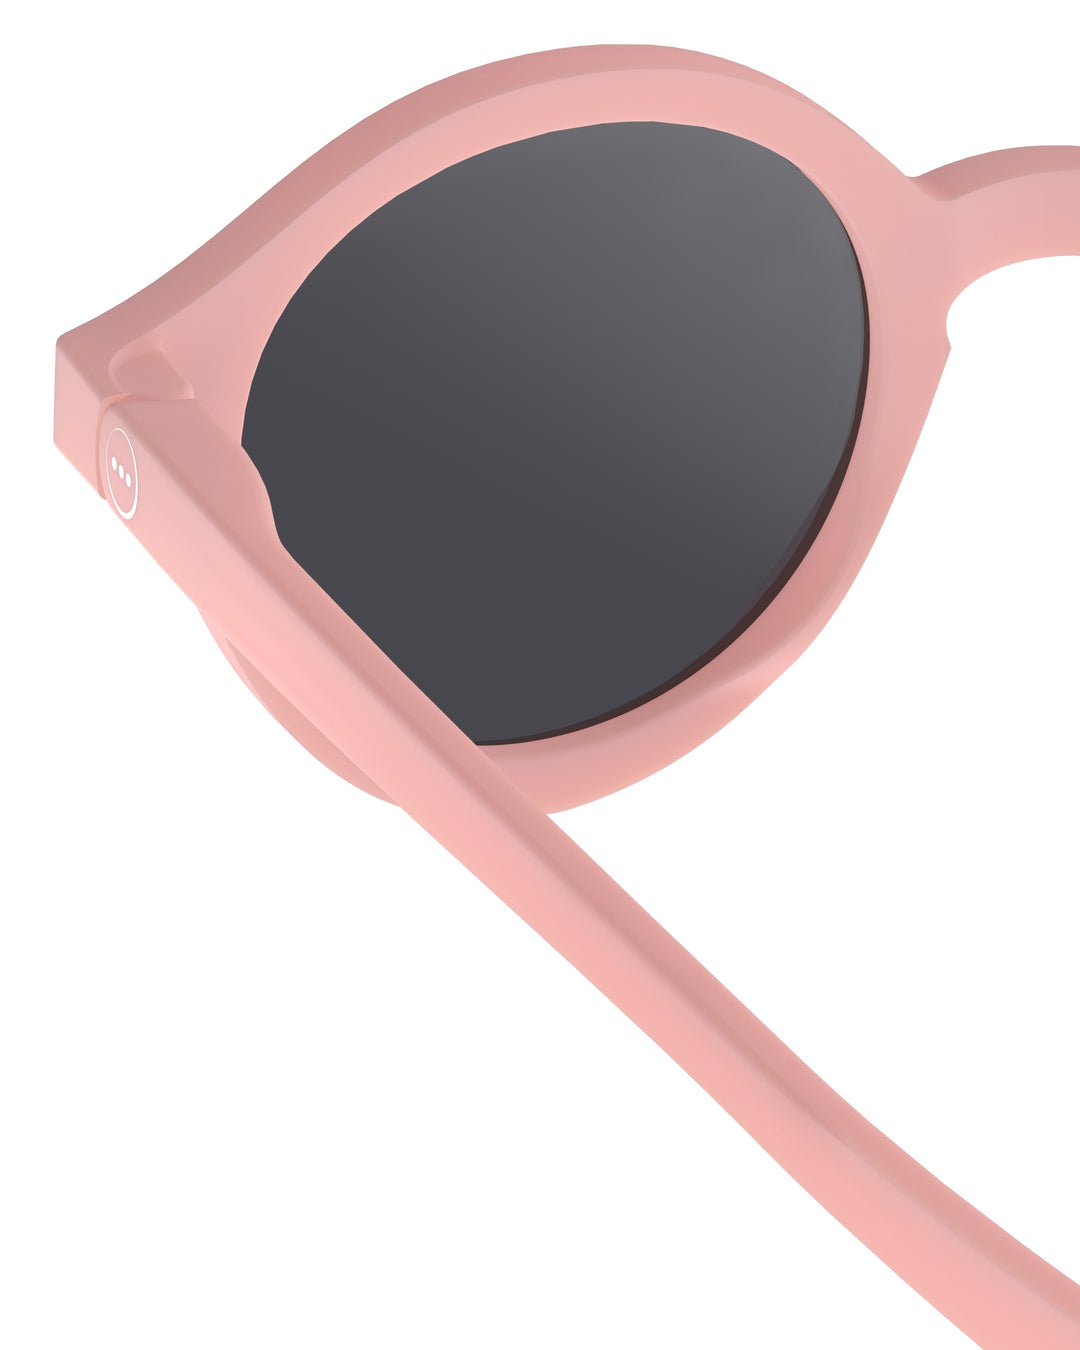 Izipizi | Occhiali da sole flessibili UV400, 3-5 anni Rosa